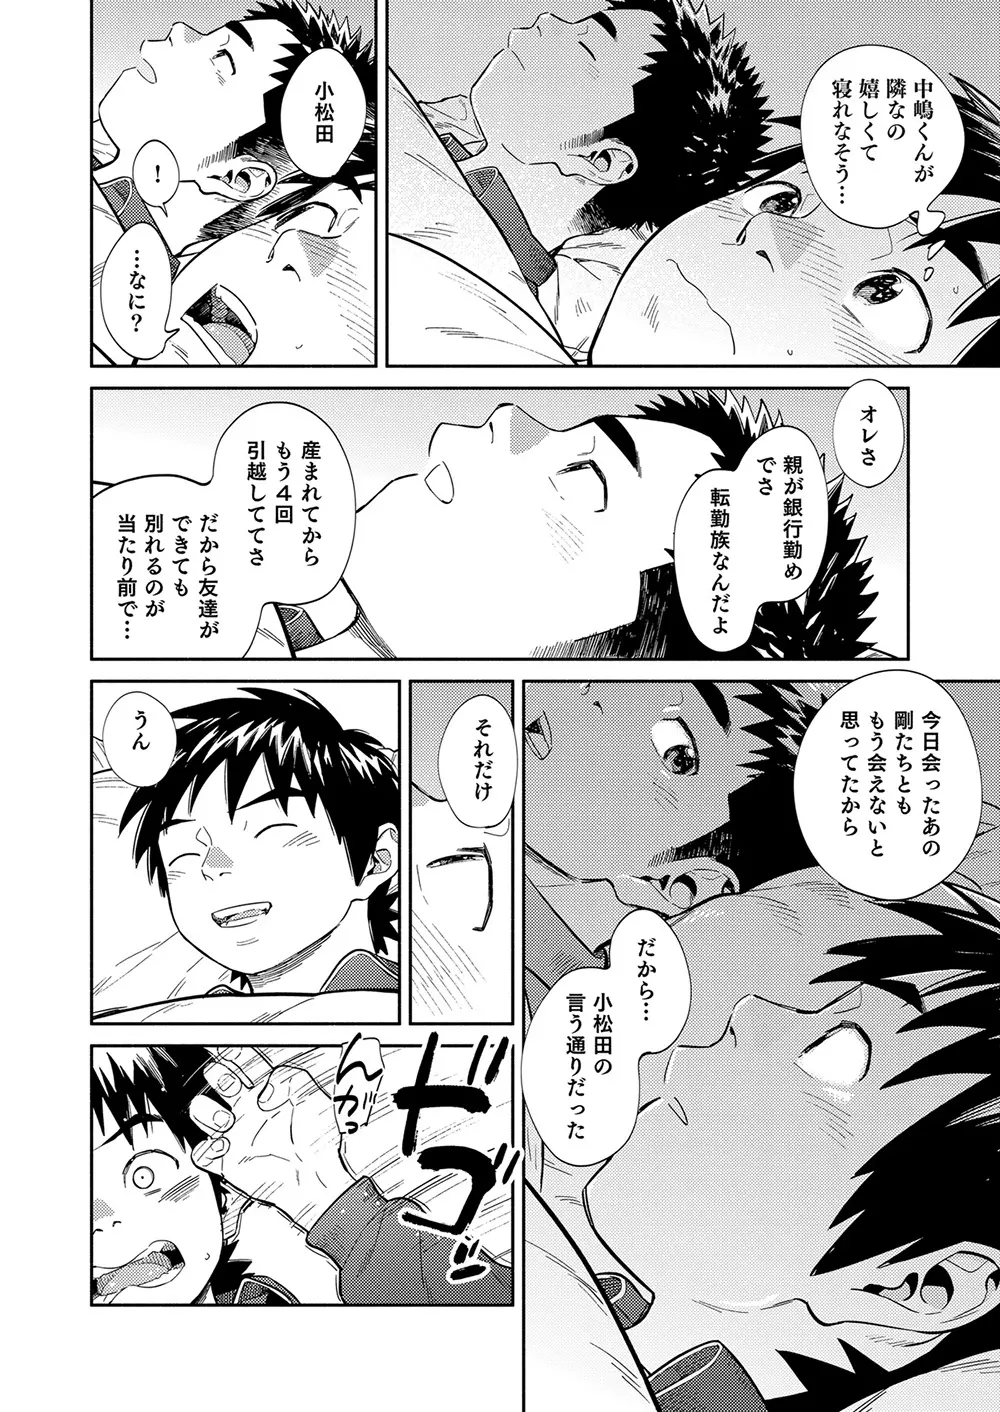 漫画少年ズーム vol.34 28ページ